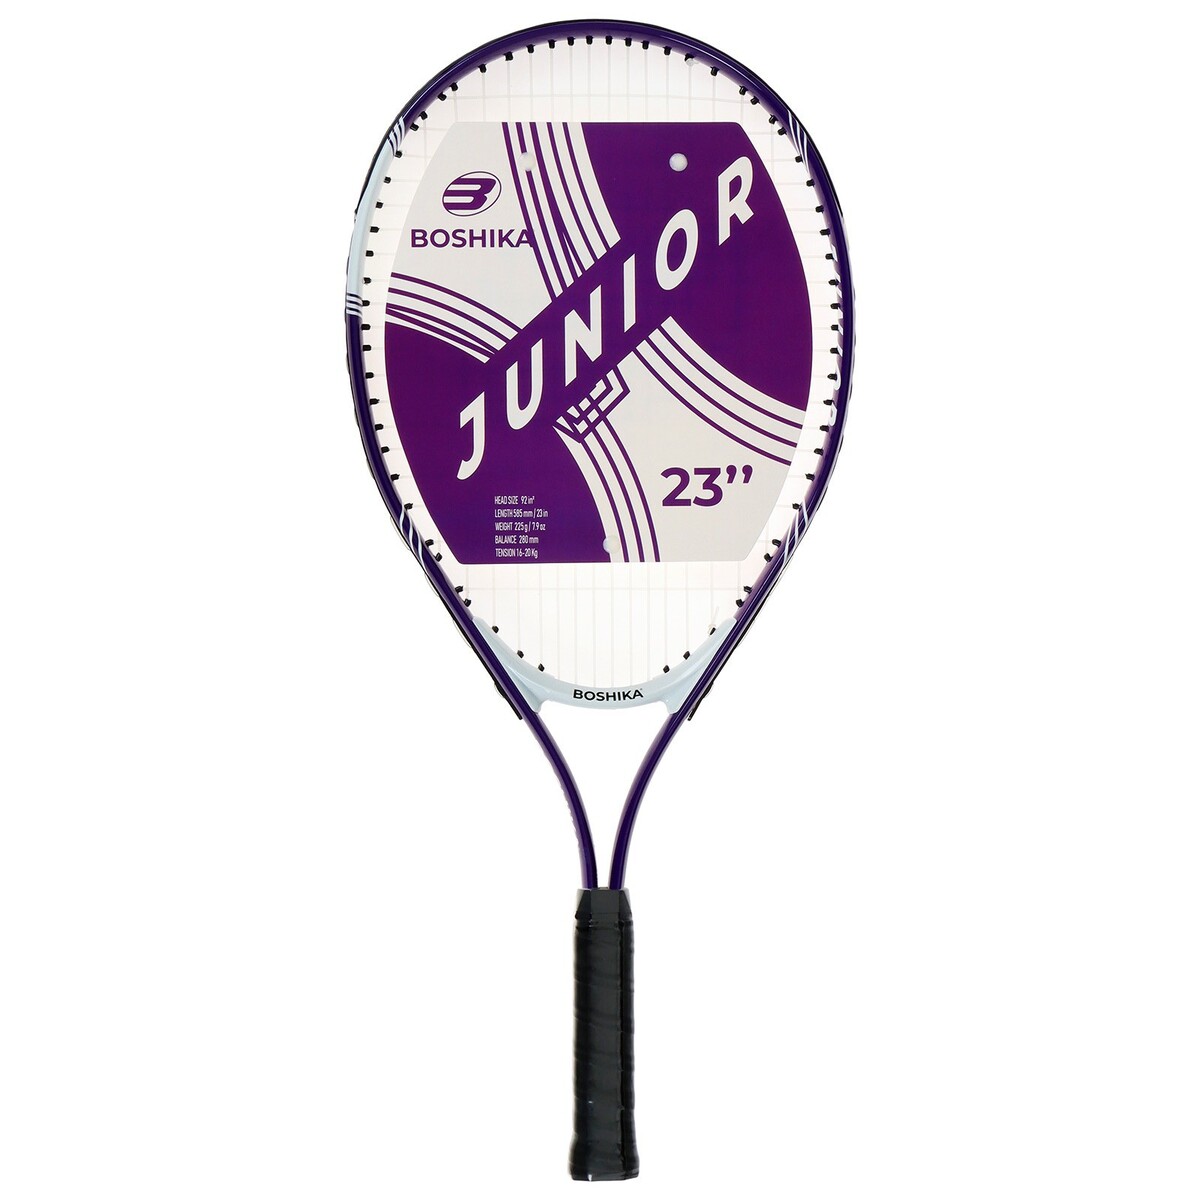 Ракетка для большого тенниса детская boshika junior, алюминий, 23'', цвет фиолетовый ракетка для большого тенниса boshika adult алюминий 27 чёрно белый